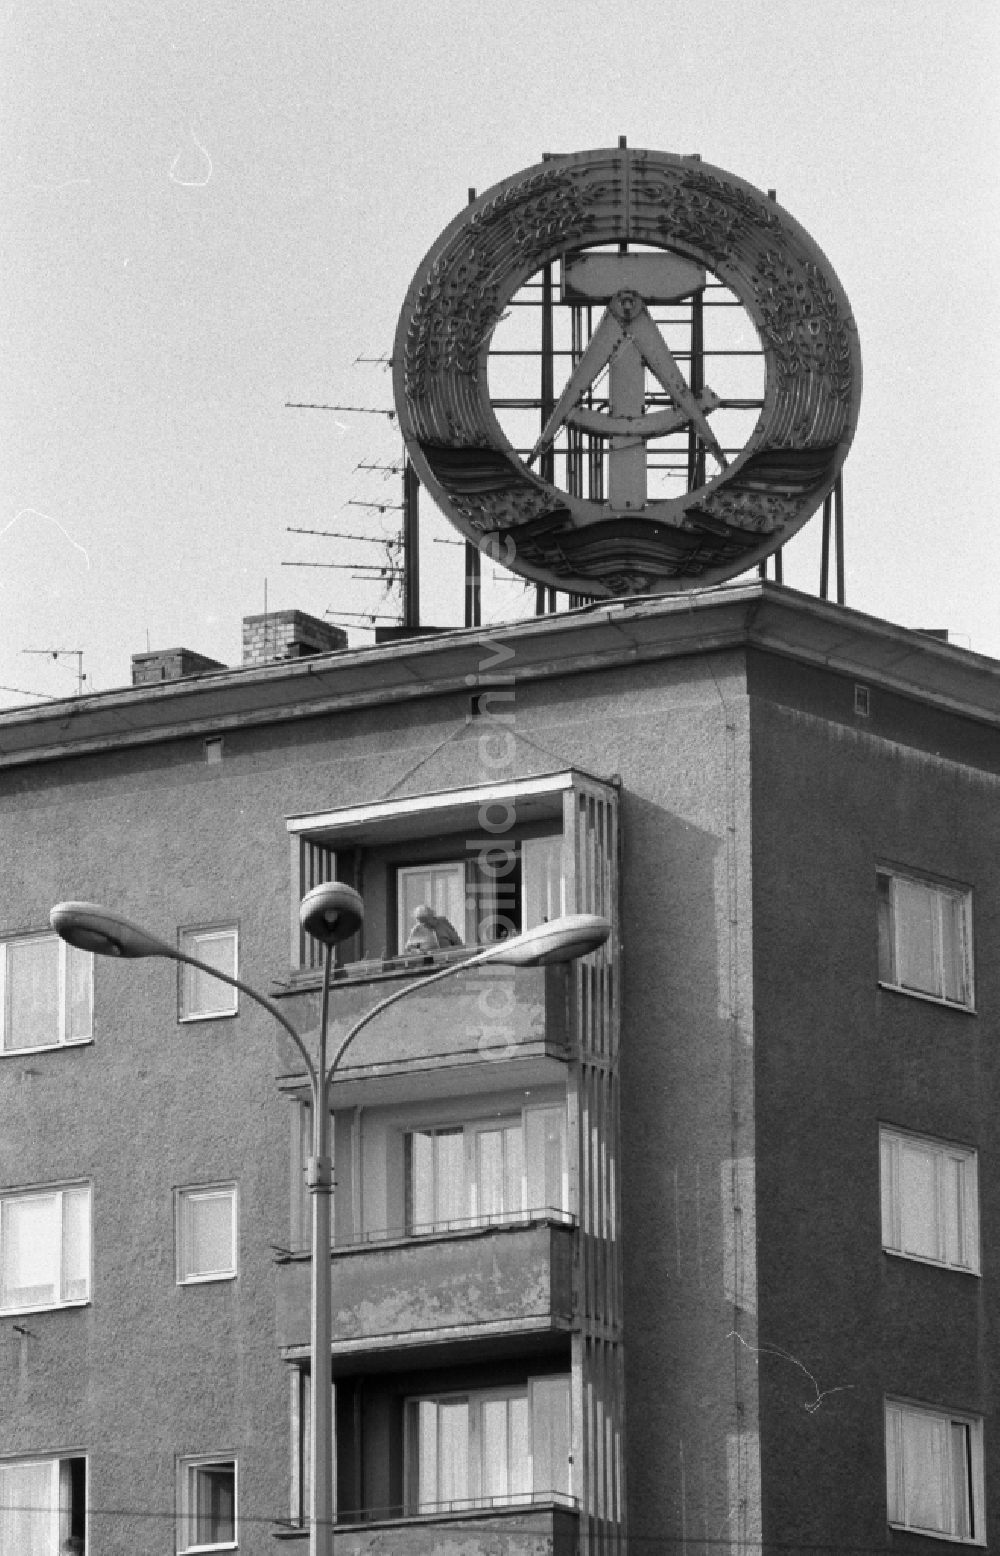 DDR-Fotoarchiv: Berlin - Symbol auf dem Dach eines Wohnhauses in Berlin auf dem Gebiet der ehemaligen DDR, Deutsche Demokratische Republik